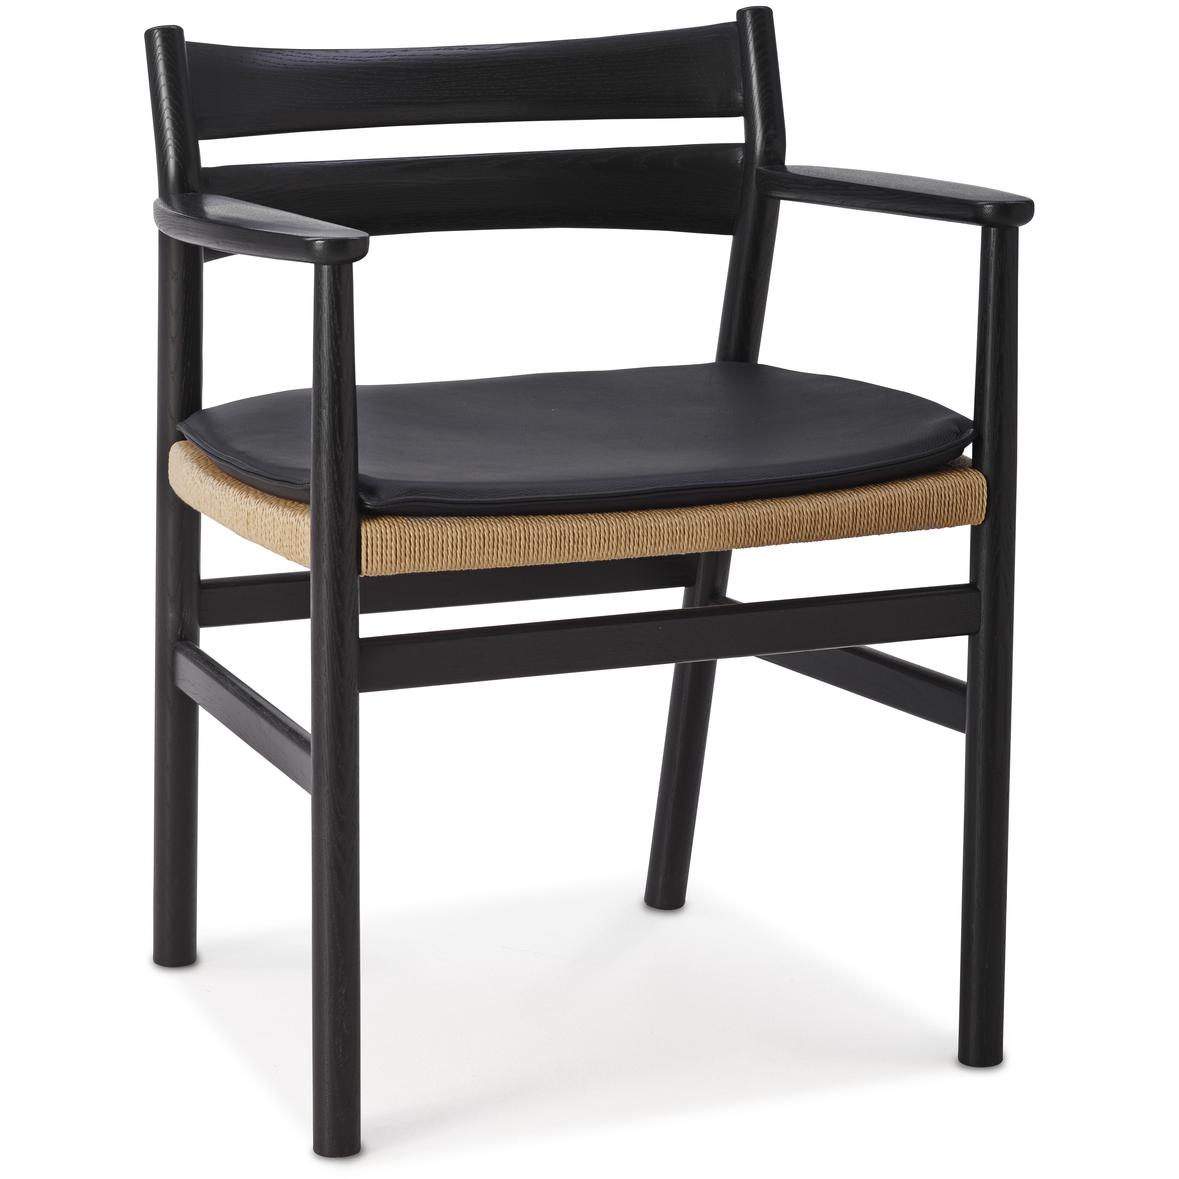 DK3 BM2 Cadeira de jantar Oak lacada, preto